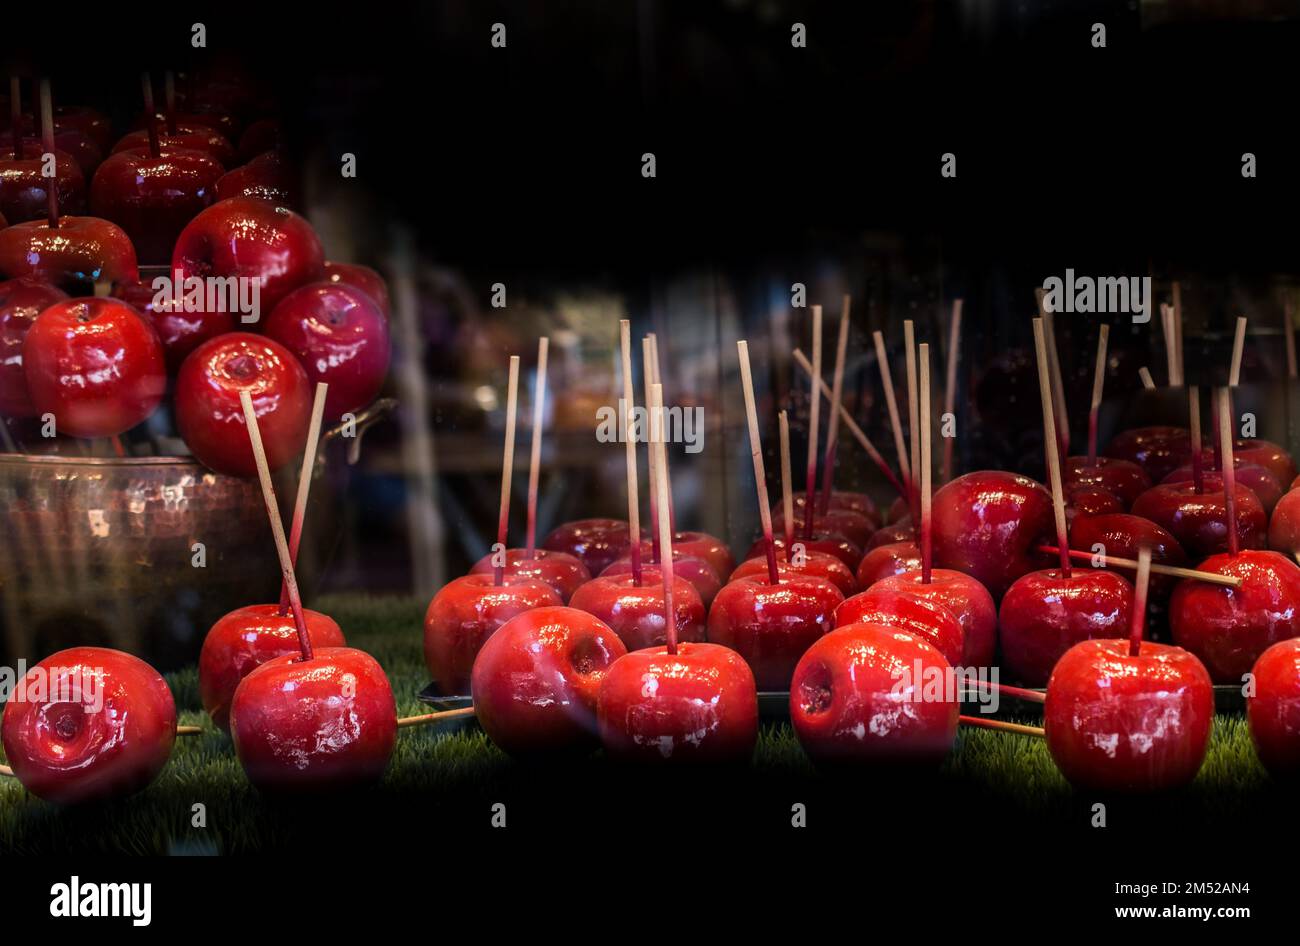 Le mele caramelle sono mele intere ricoperte da un rivestimento duro di  caramelle o zucchero, con un bastone inserito come manico Foto stock - Alamy